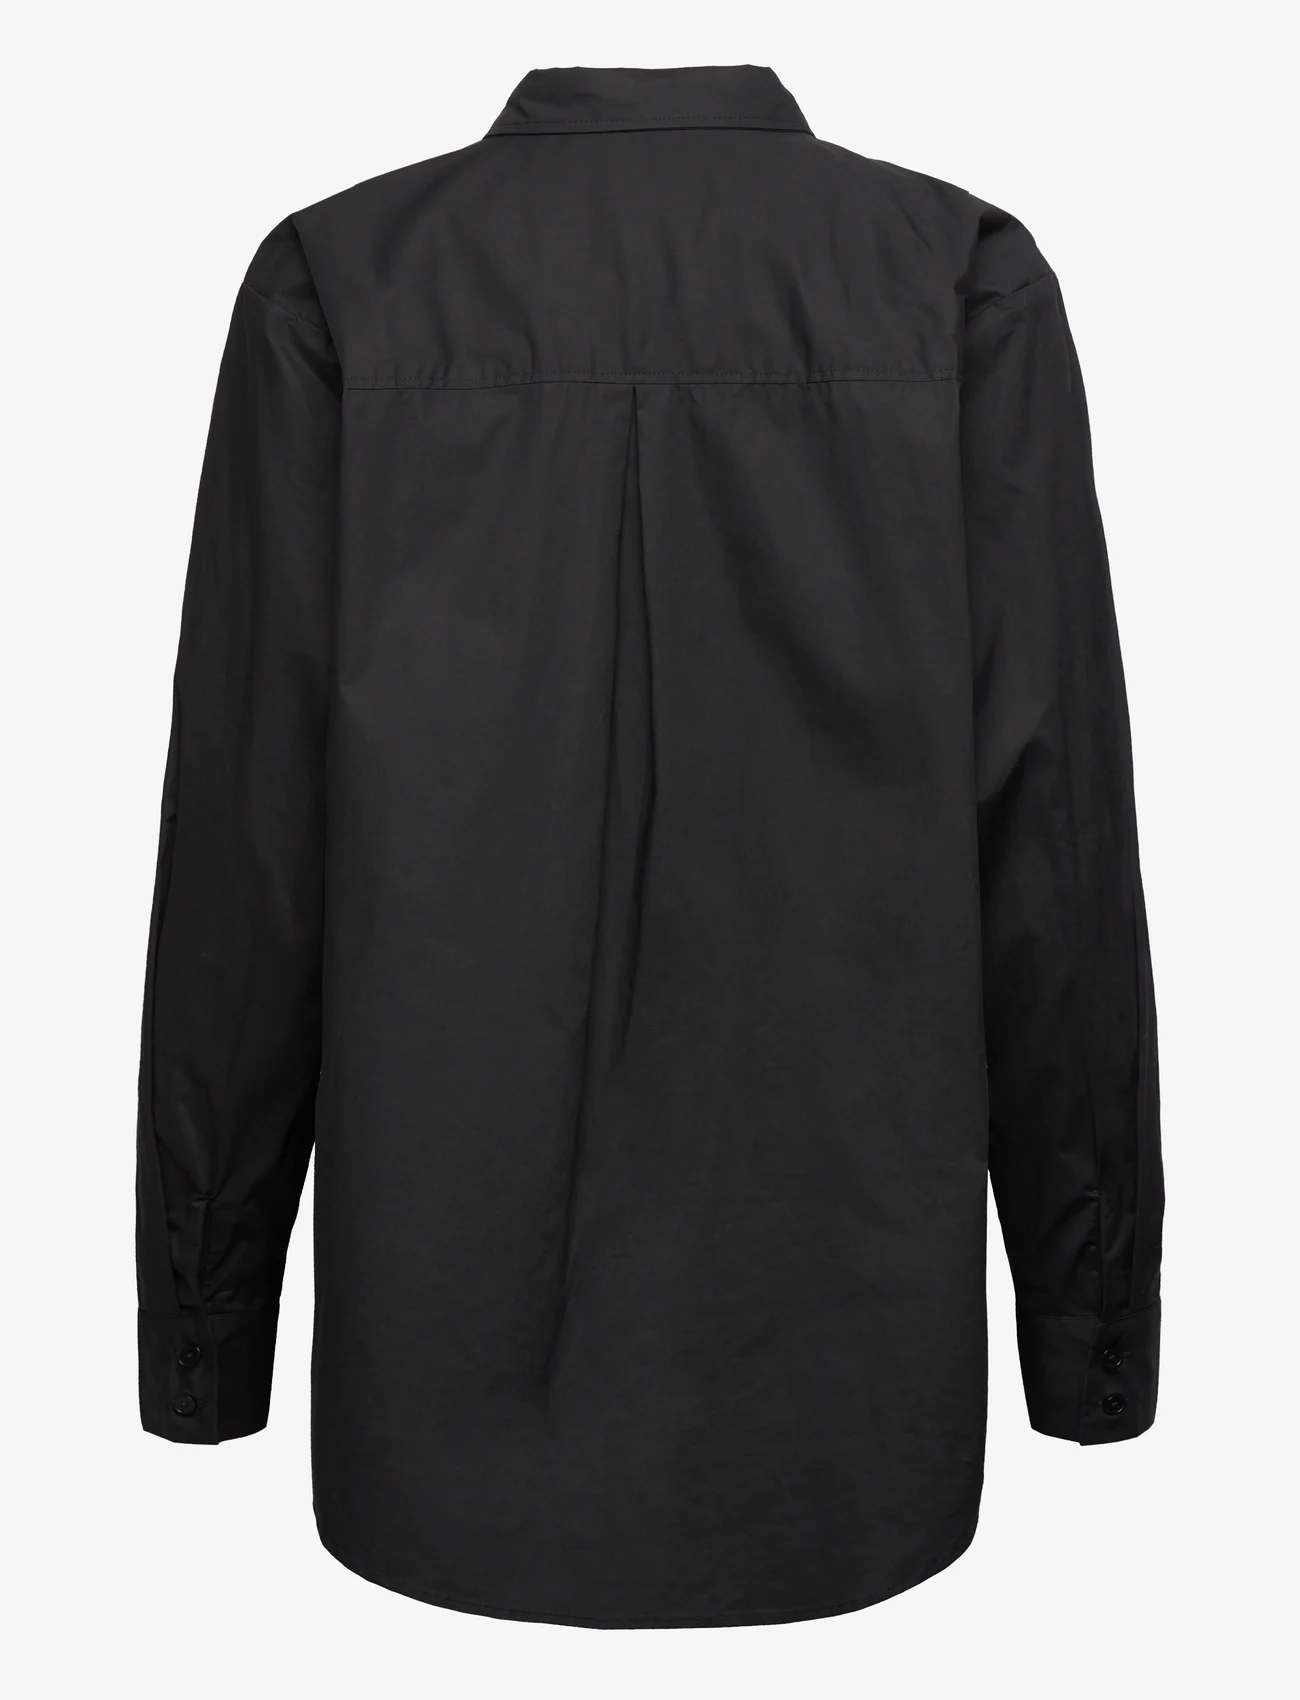 Part Two - AdinaPW SH - long-sleeved shirts - black - 1